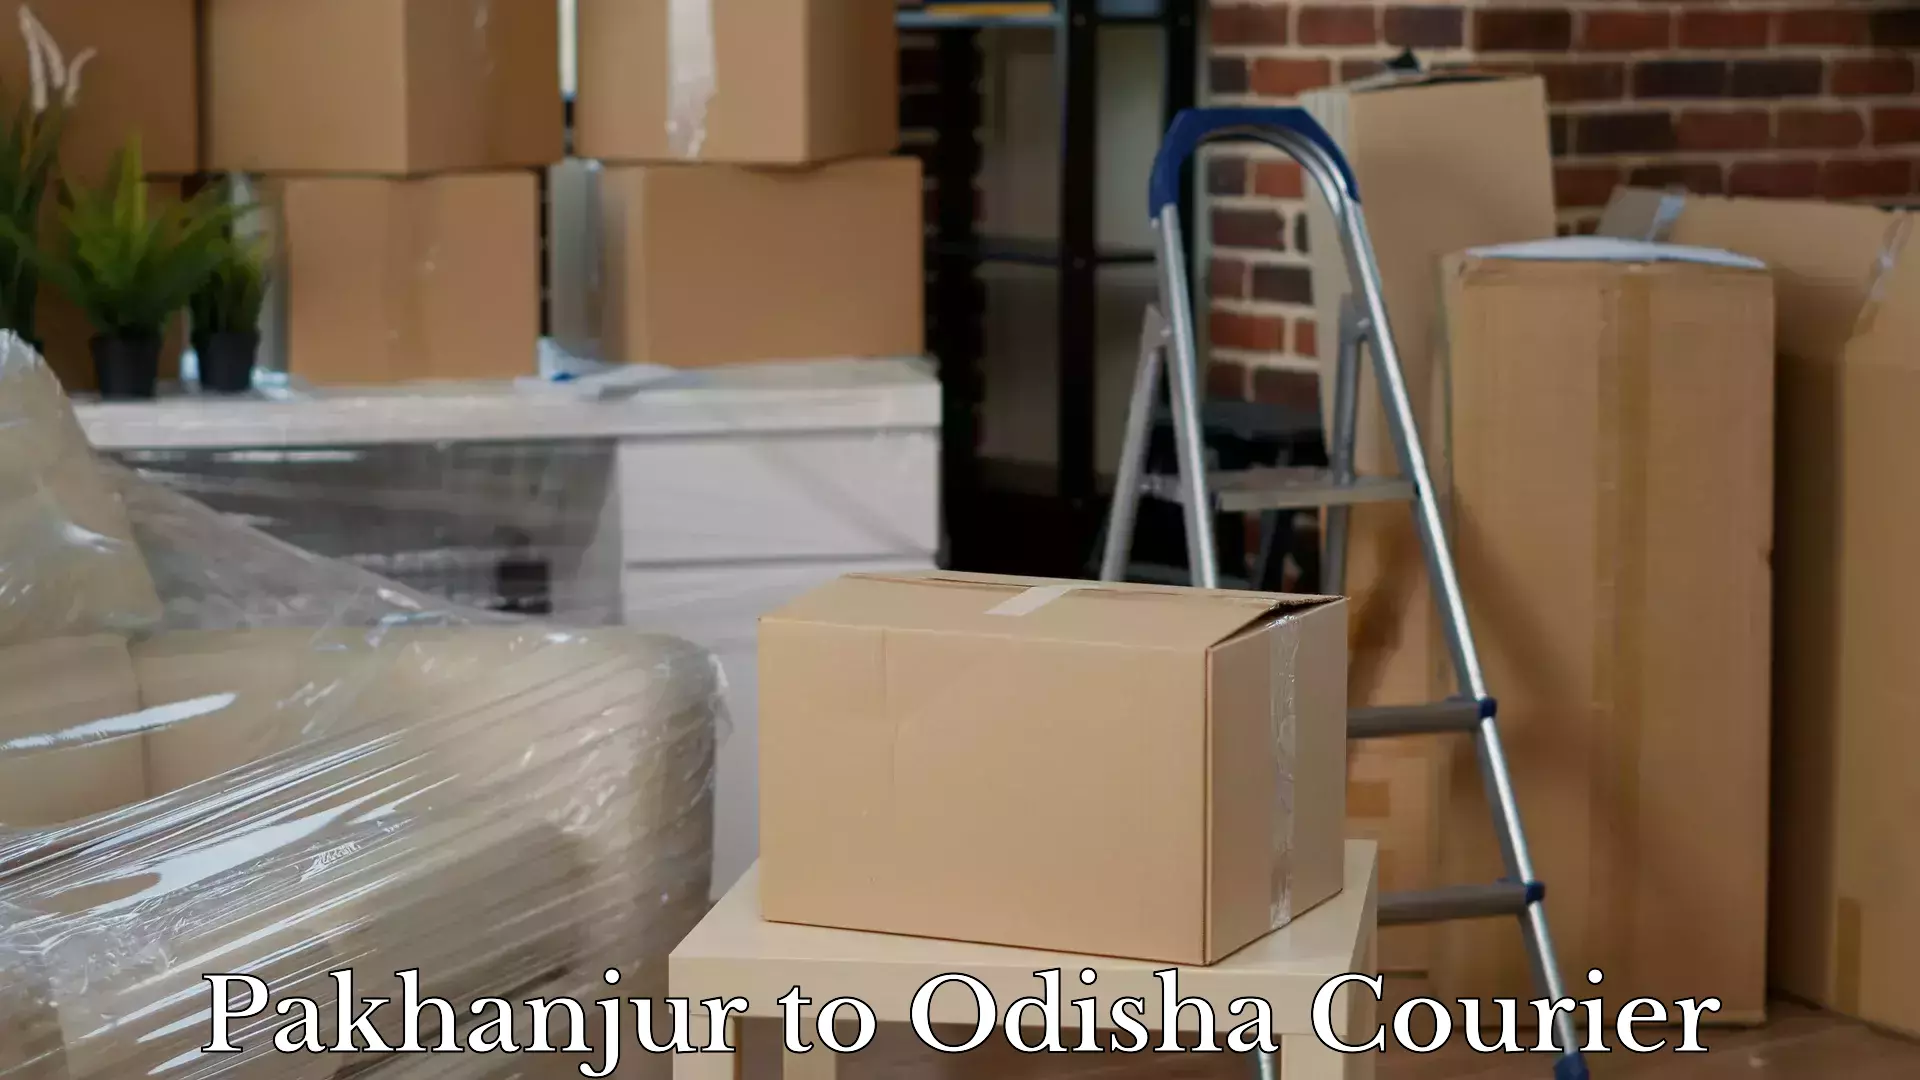 Holiday season luggage delivery Pakhanjur to Ukhunda